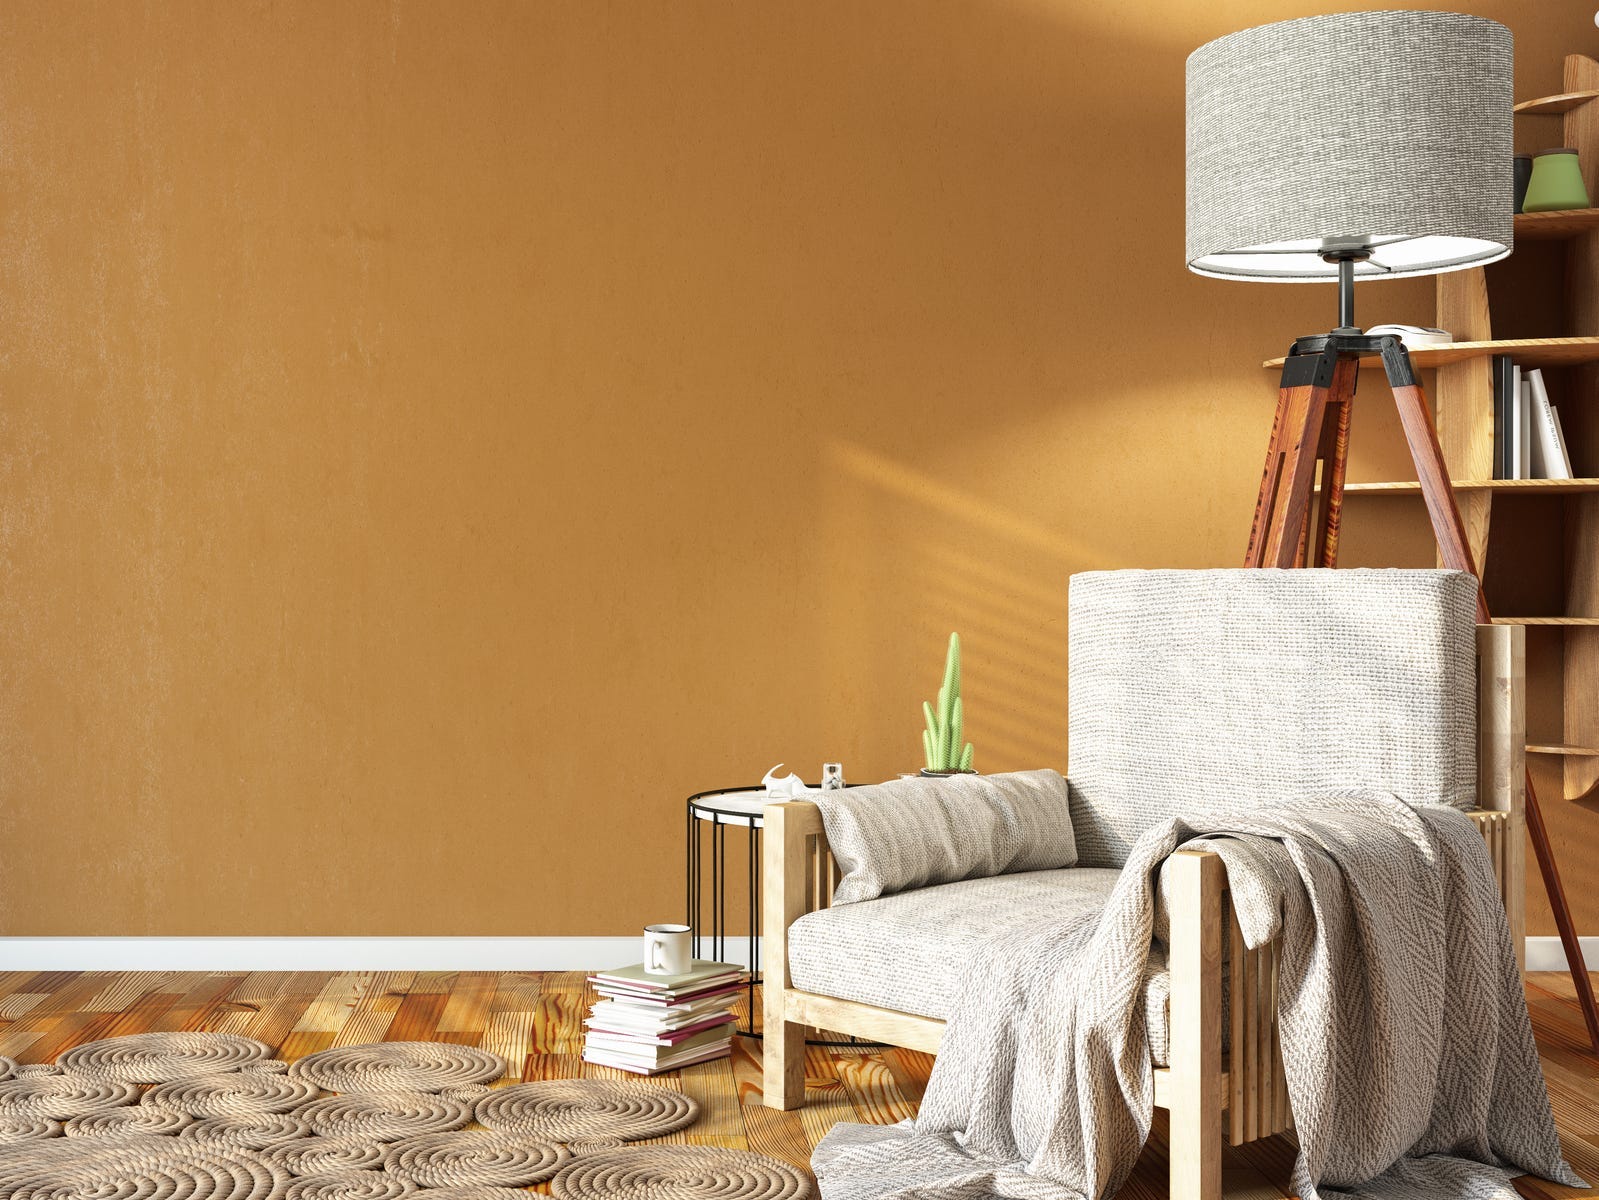 Ein Raum mit einer butterscotchfarbenen Wand, einem cremefarbenen Stuhl mit Decke und einer Lampe